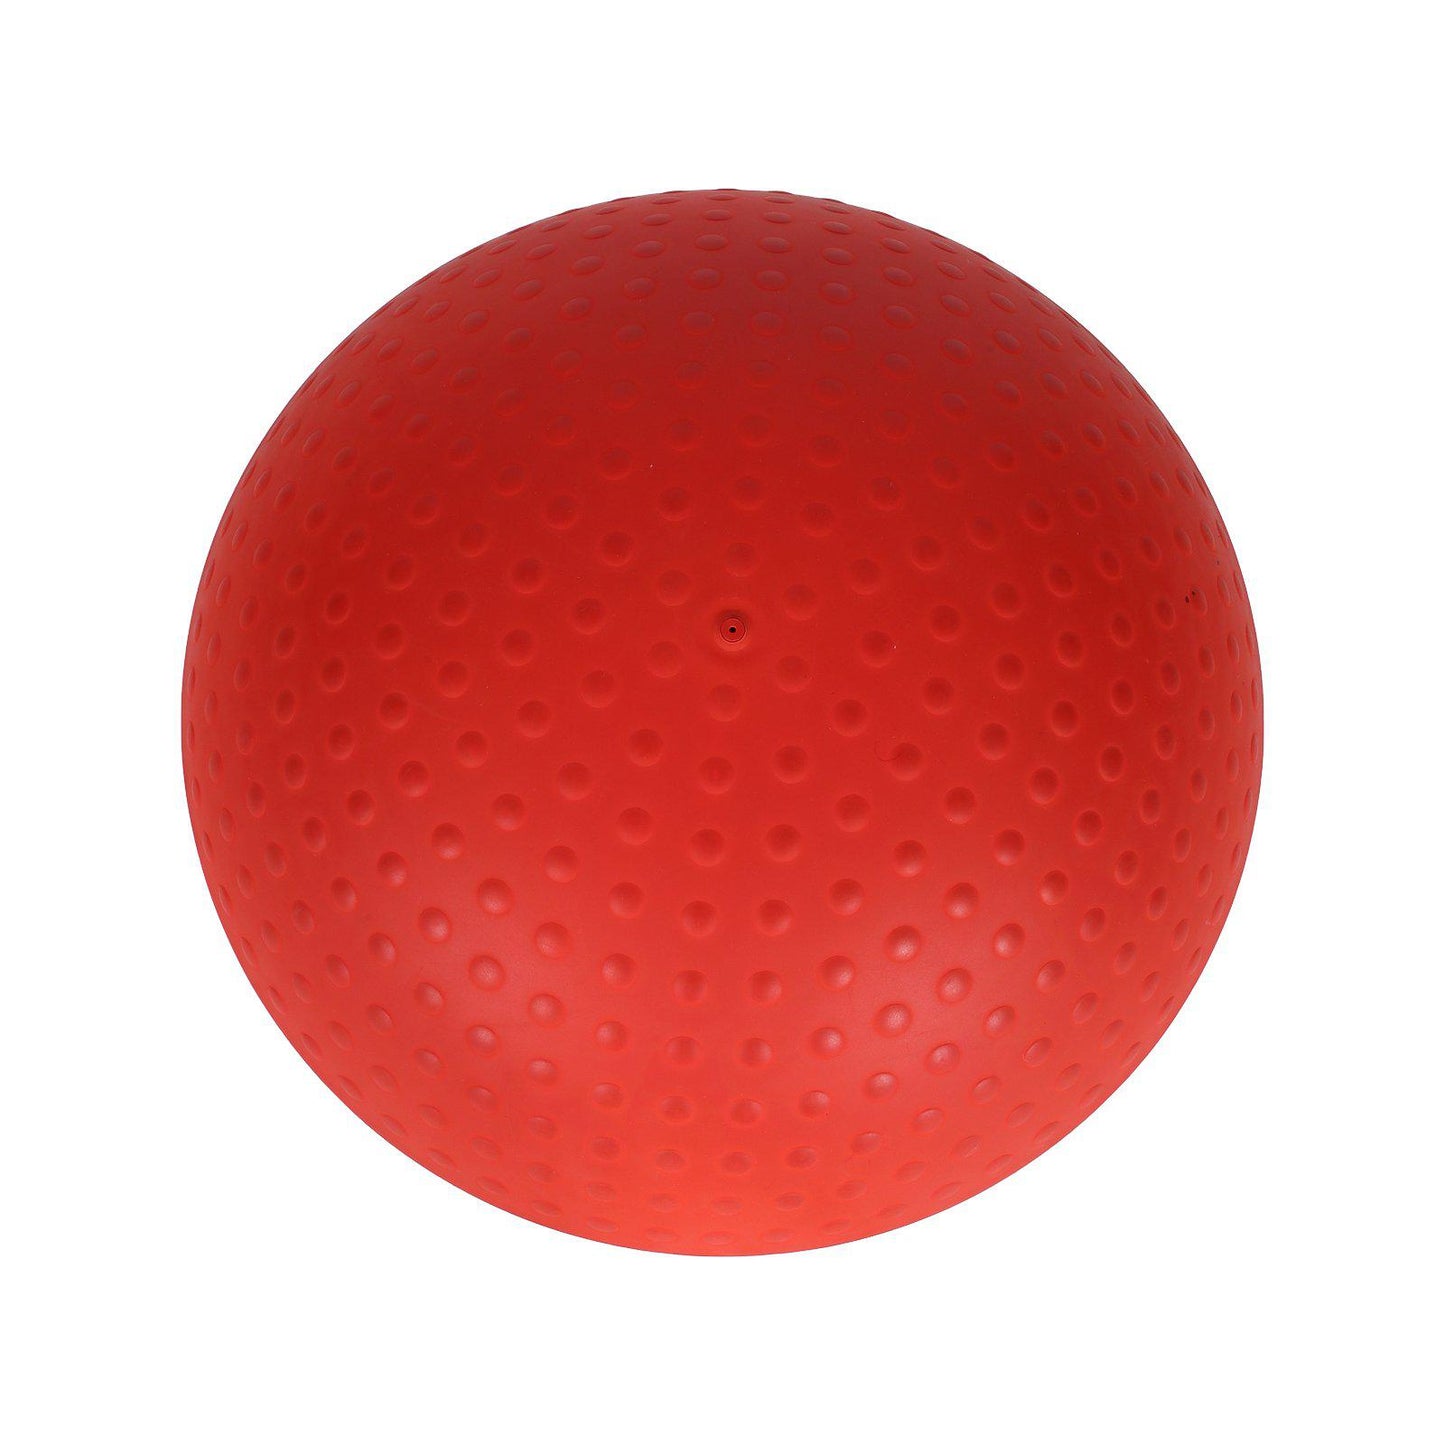 Tabouret gonflable design Ballo Humanscale occasion - Rouge et Blanc - 56 x 48 cm-Bluedigo